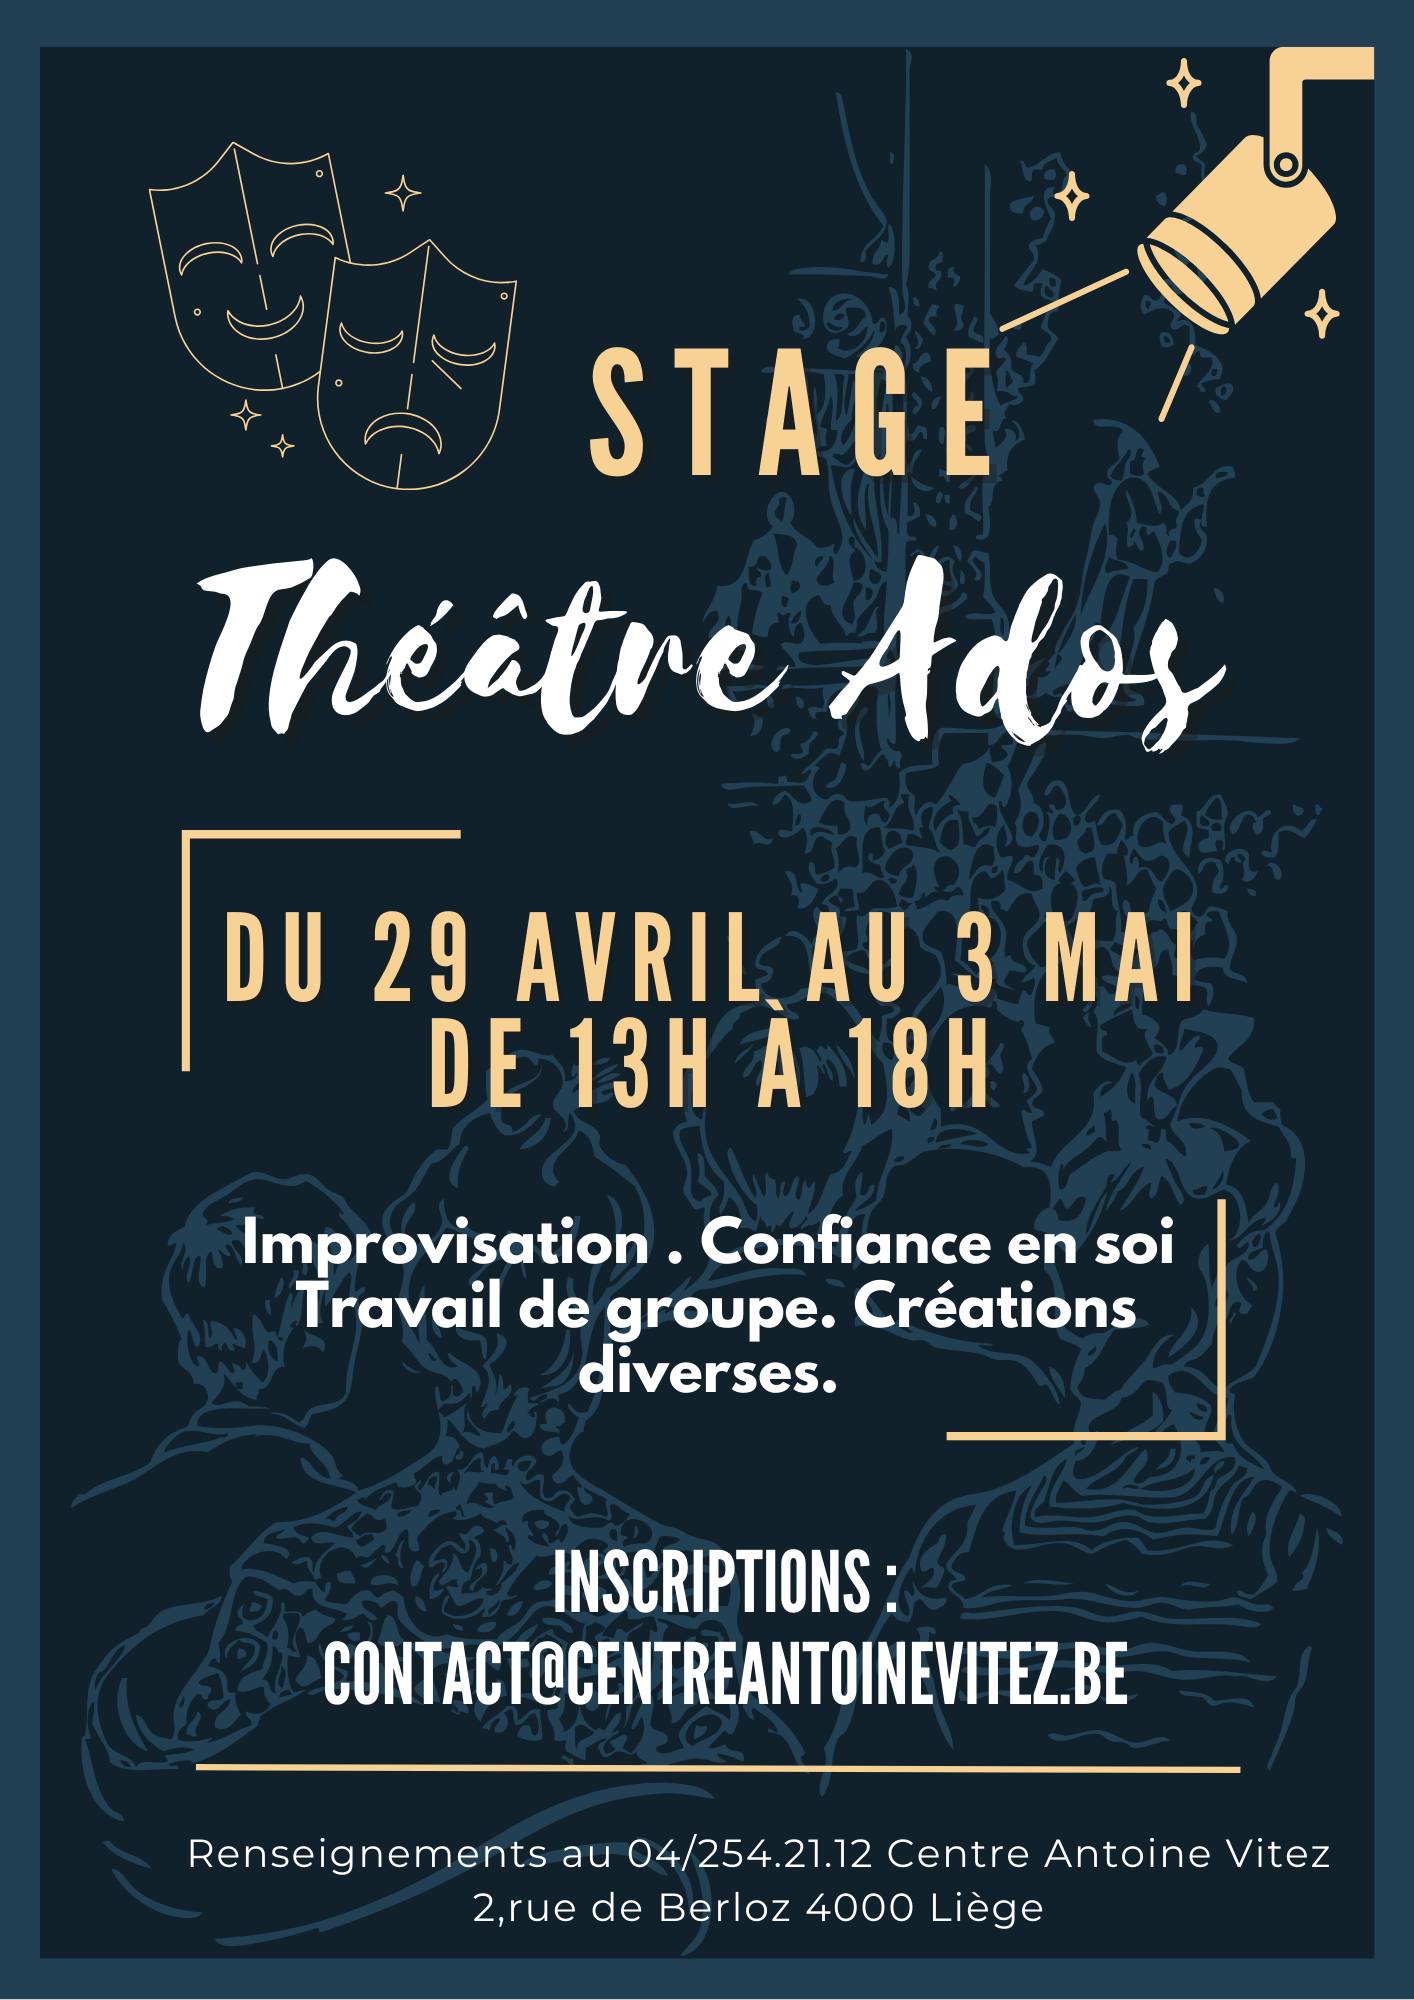 Stage Théâtre Ados au Centre Antoine Vitez à LIEGE